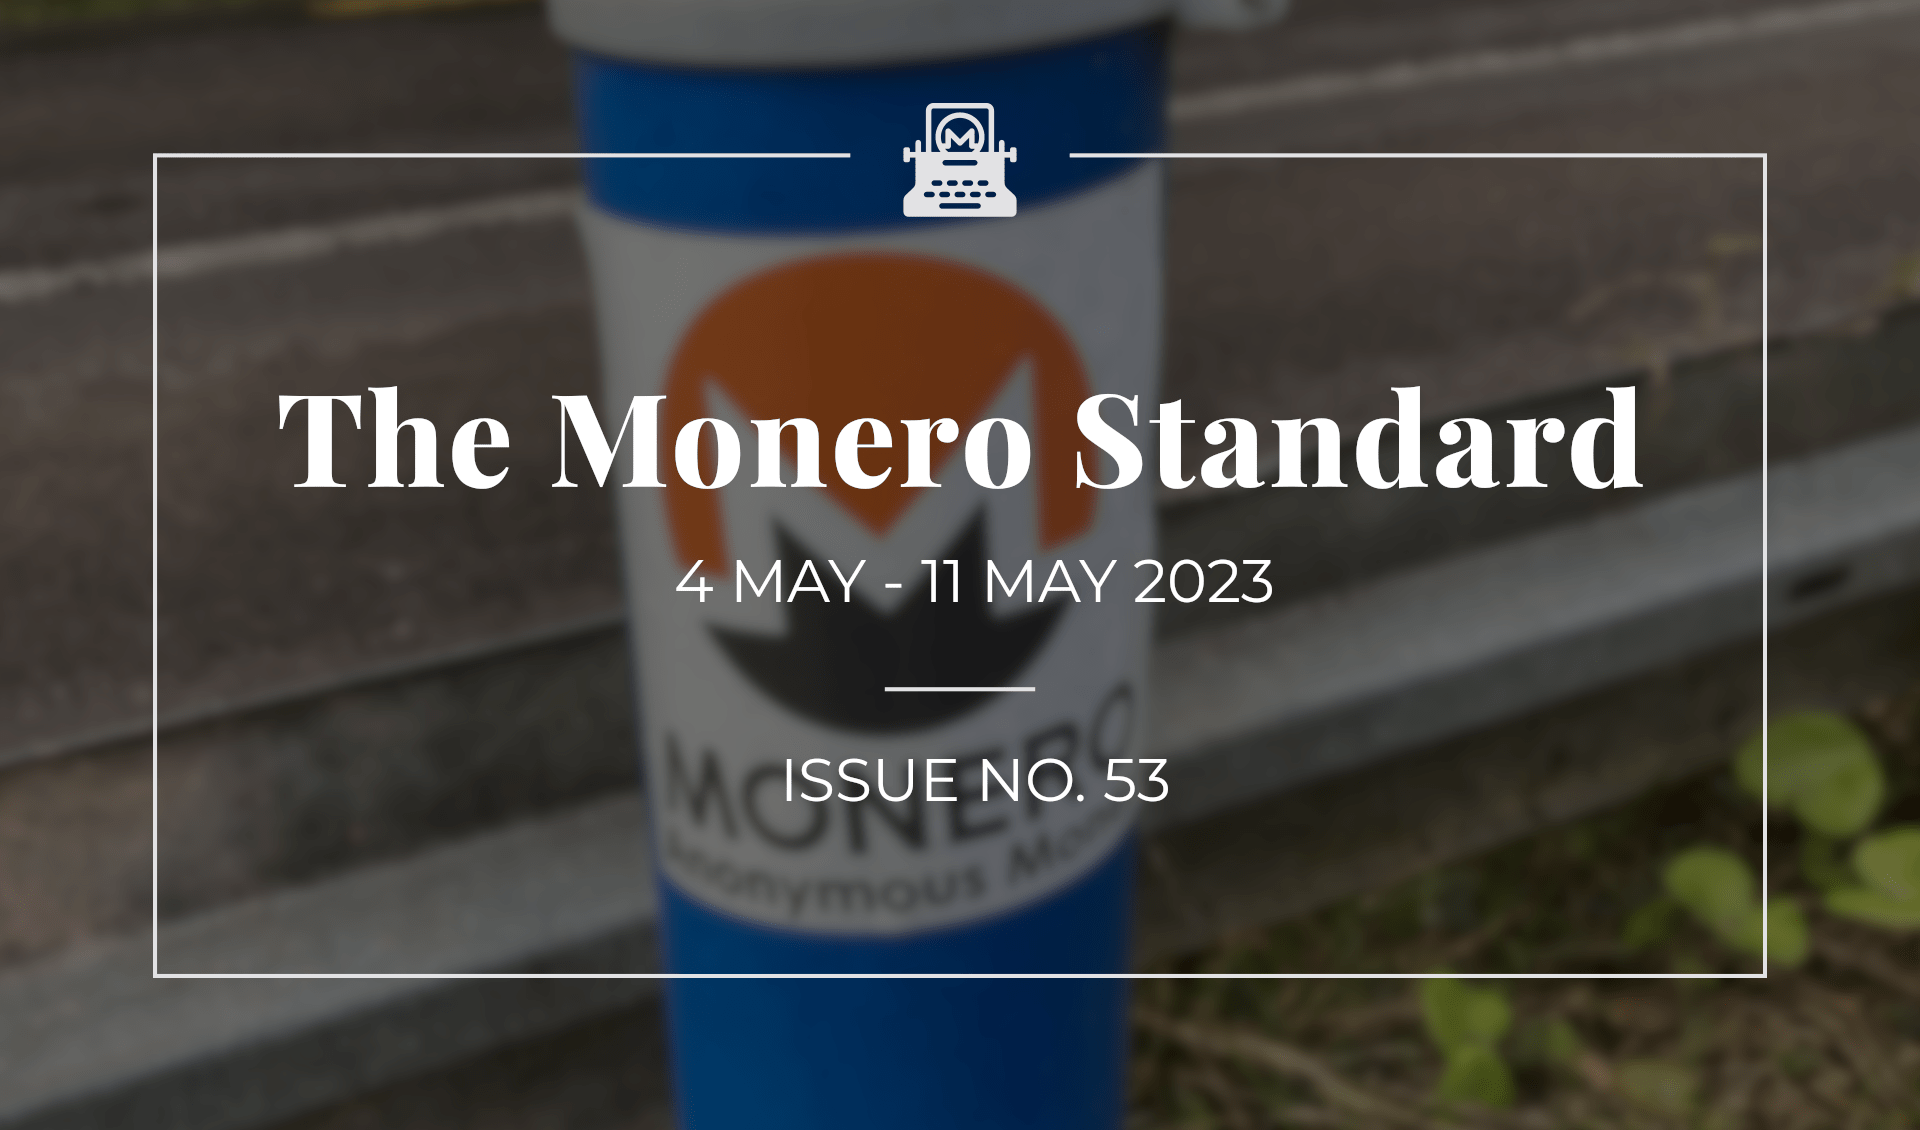 The Monero Standard #53: 4 May 2023 - 11 May 2023